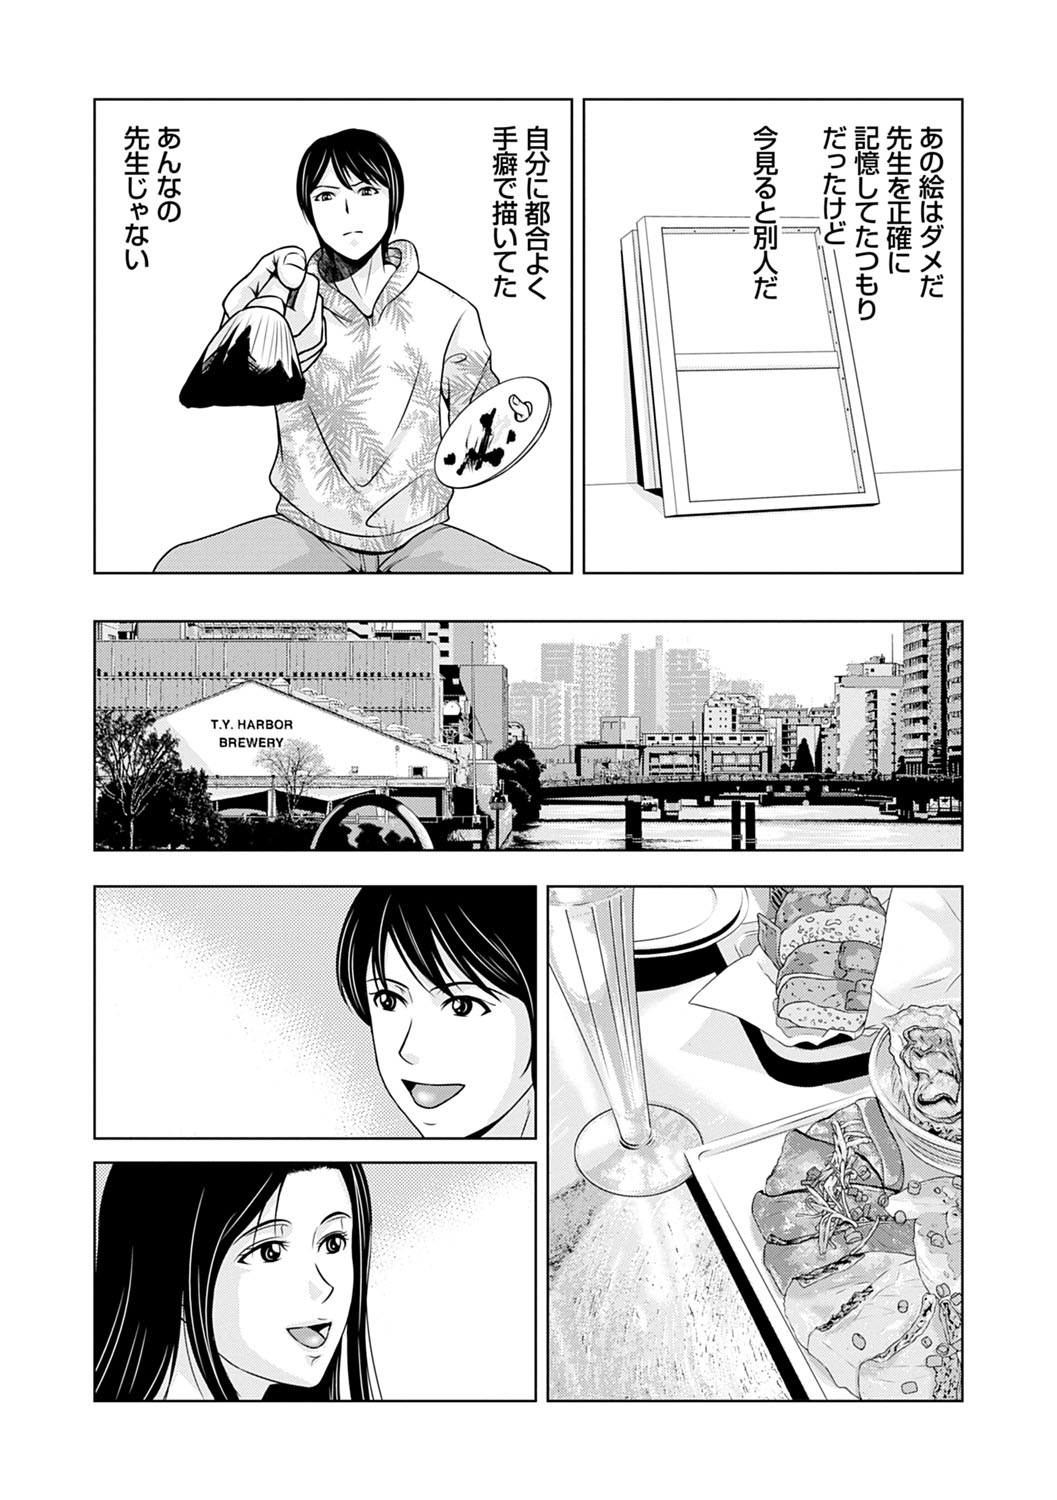 [Yokoyama Michiru] Ano Hi no Sensei 3 page 29 full